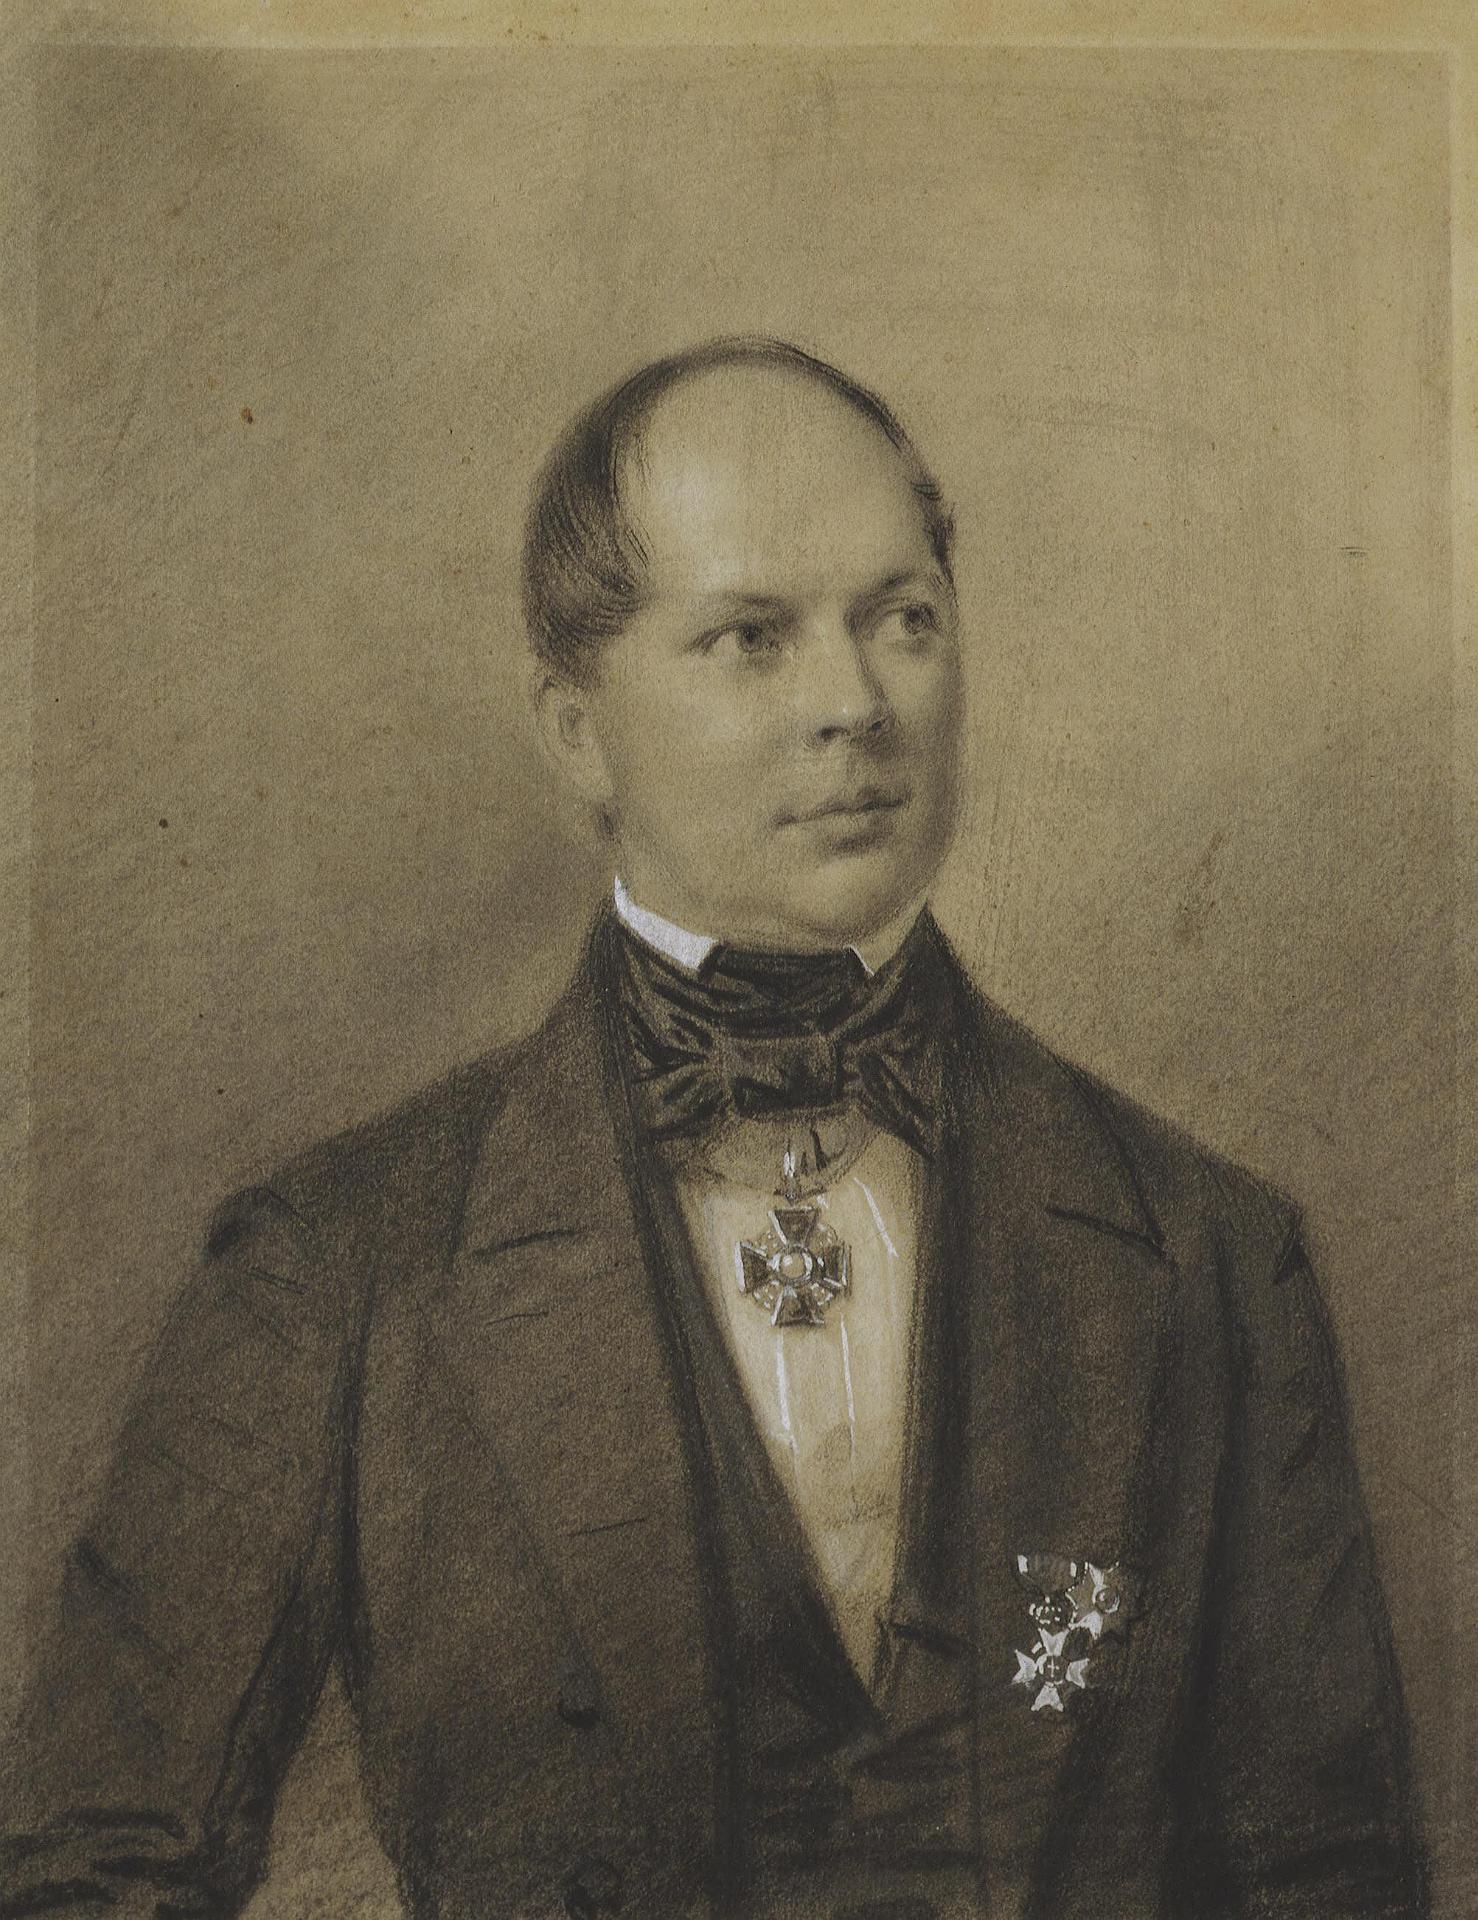 Франц крюгер. "Мужской портрет". 1851.